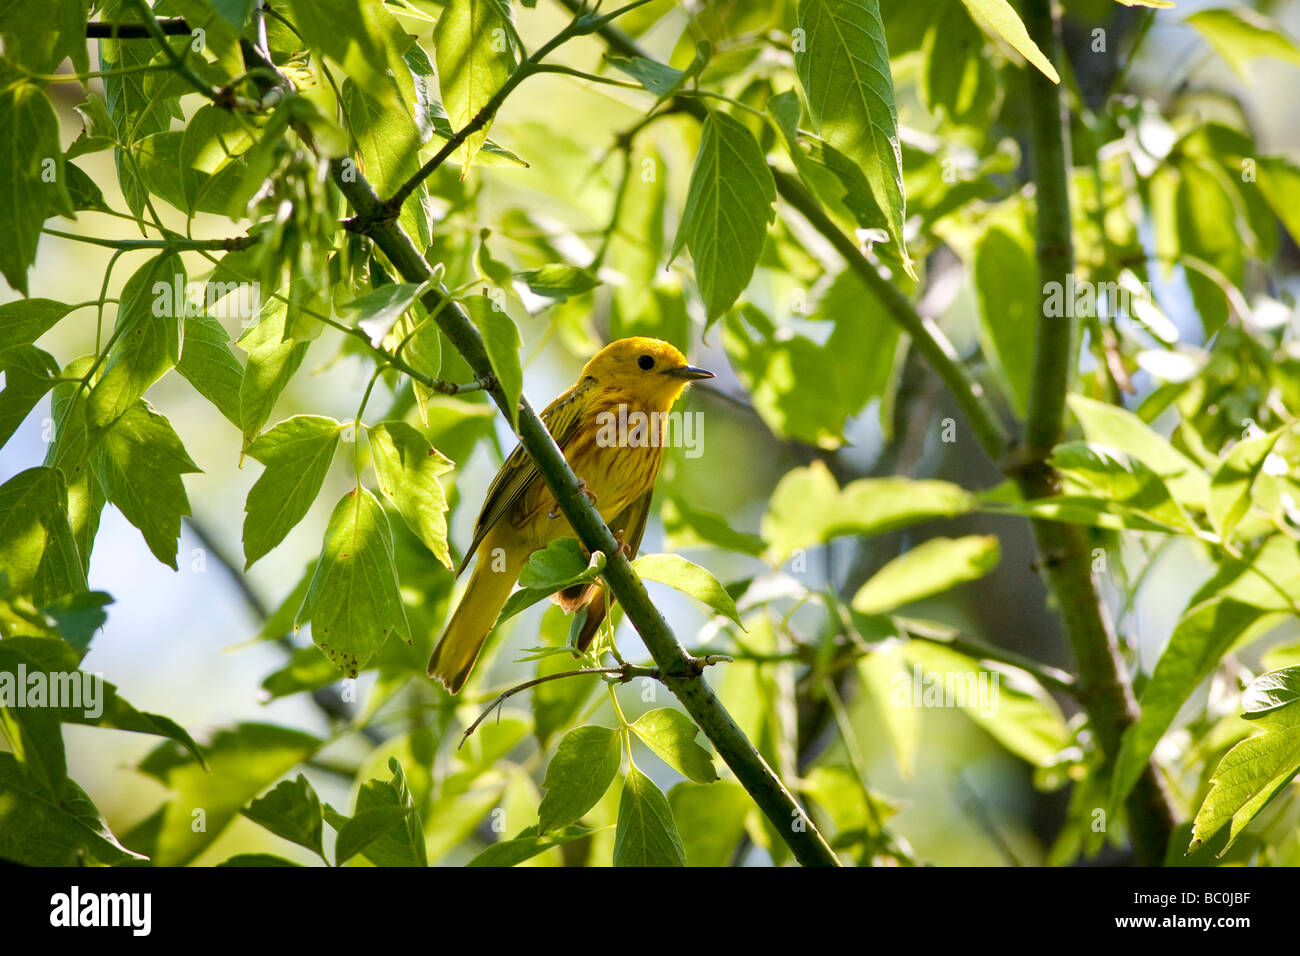 Paruline jaune - Setophaga petechia - perché sur une branche avec des feuilles vertes Banque D'Images